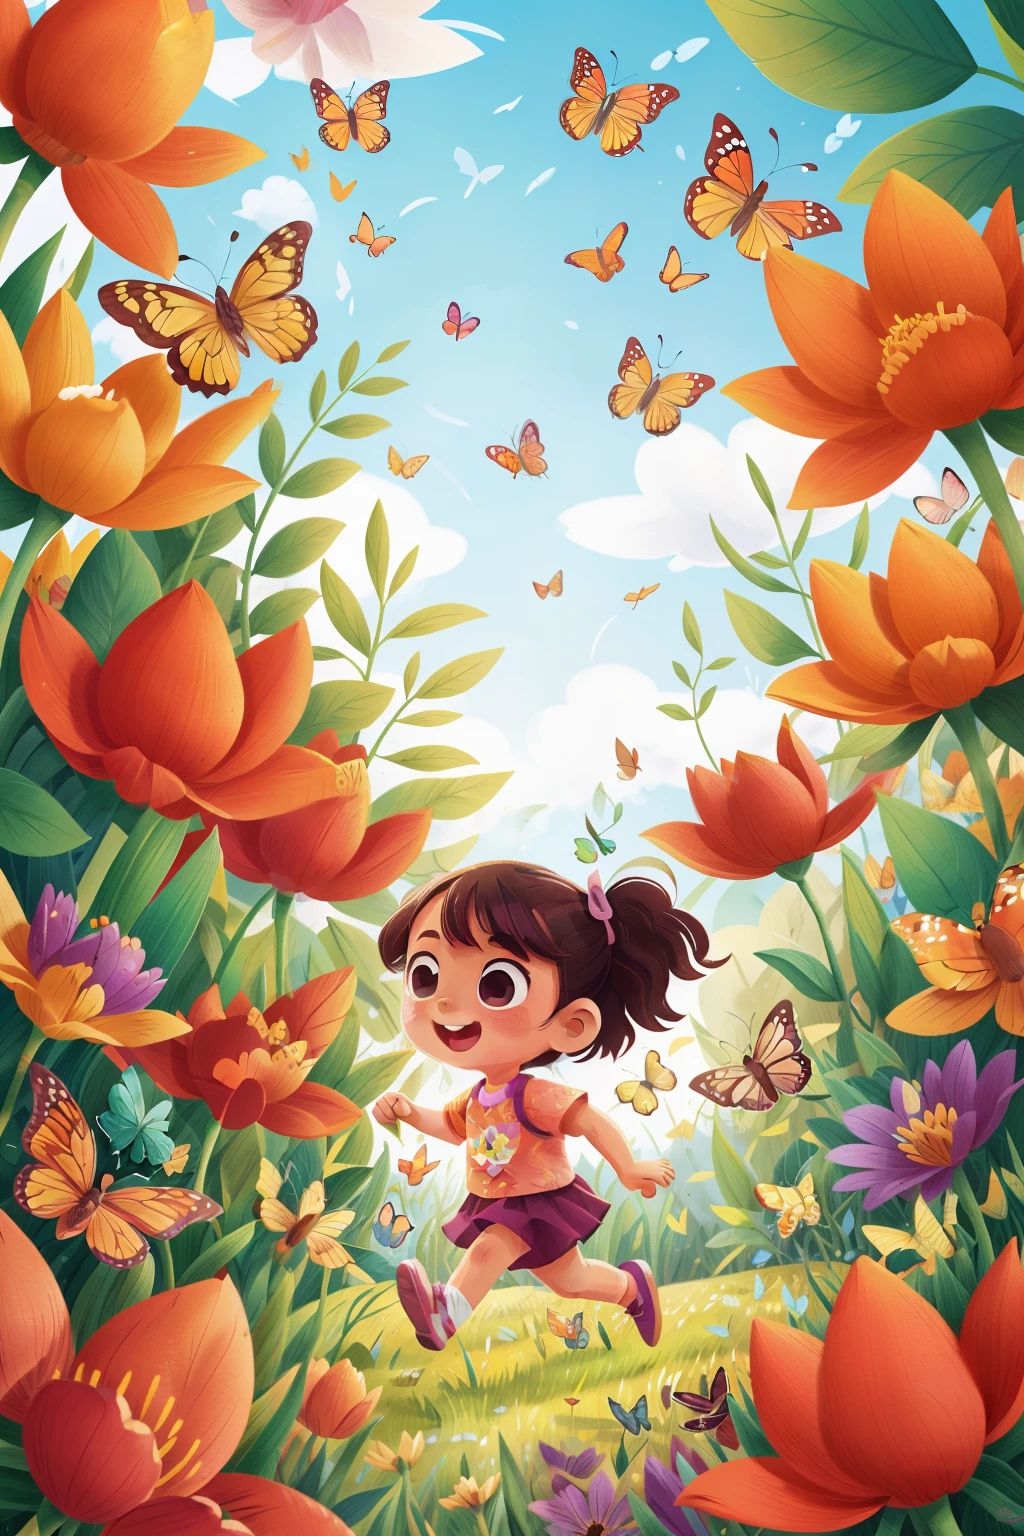 Gera uma imagem de uma menina muito jovem correndo feliz em um campo florido, cercado por borboletas de vários tons de cor